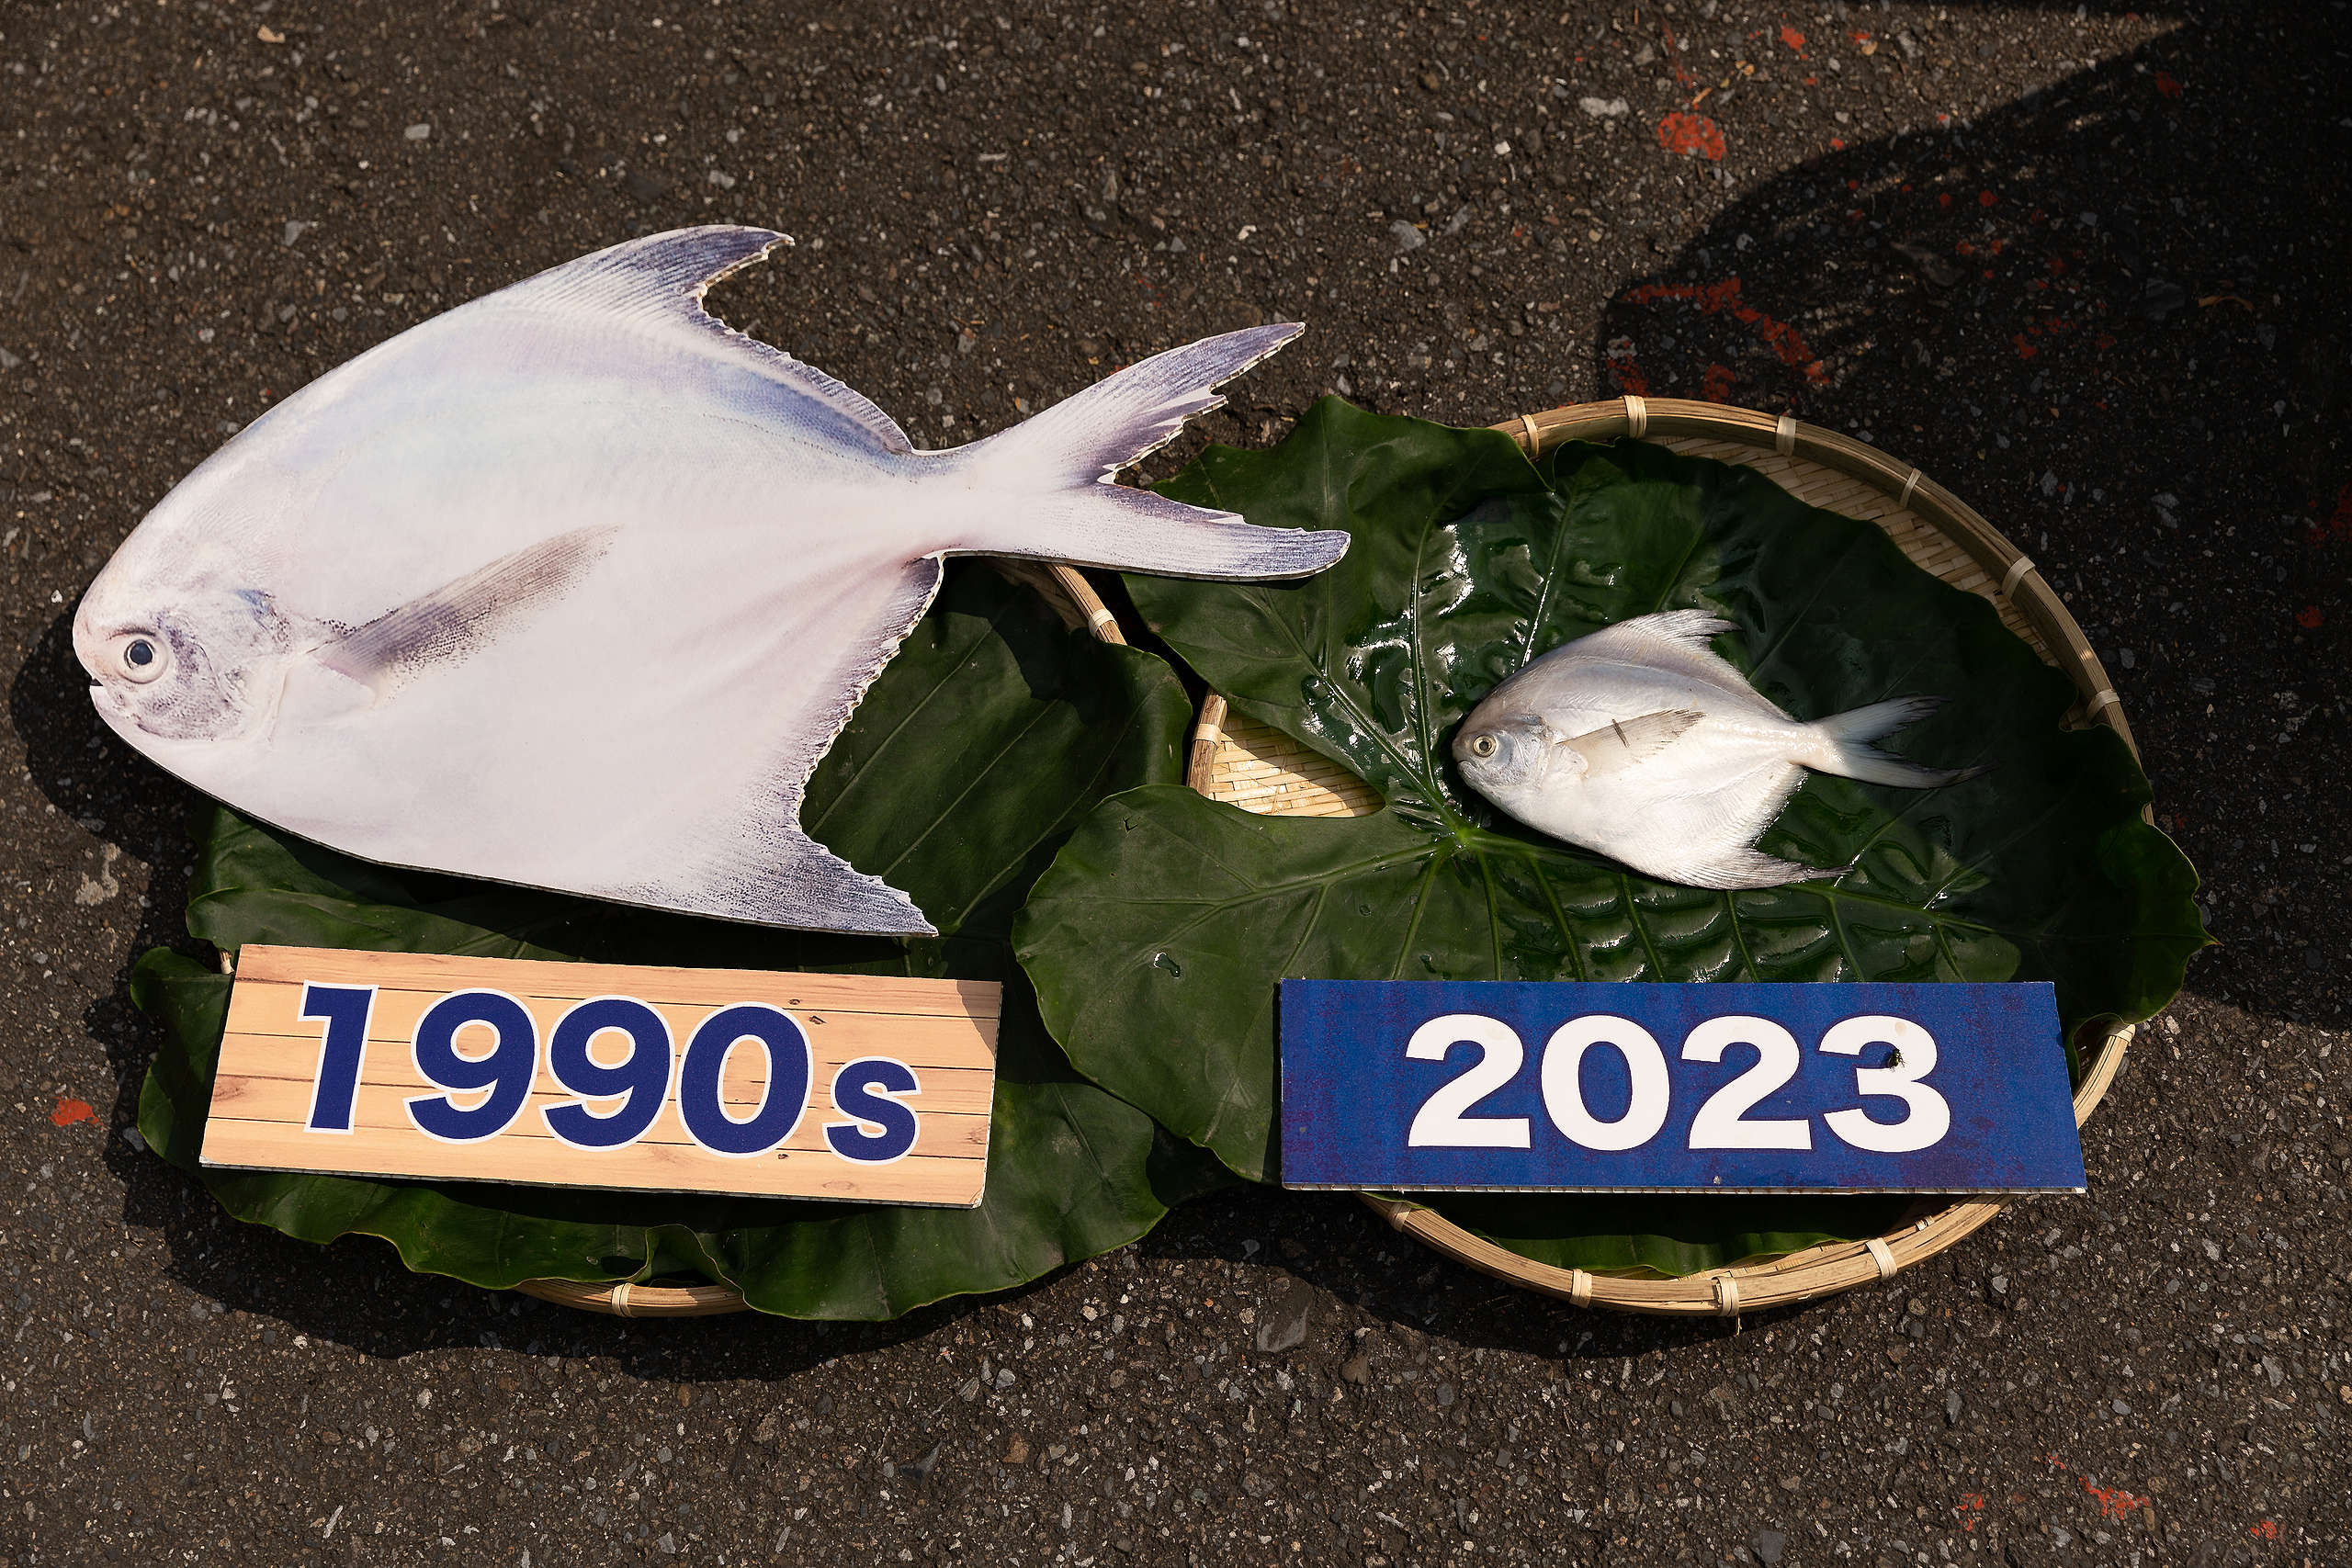 綠色和平於調查期間，至臺灣各地漁市場調查六種常見魚類的體長大小，並將之與文獻中的成熟體長參考值比對，並於現場放置實際在漁市中販賣的幼魚。